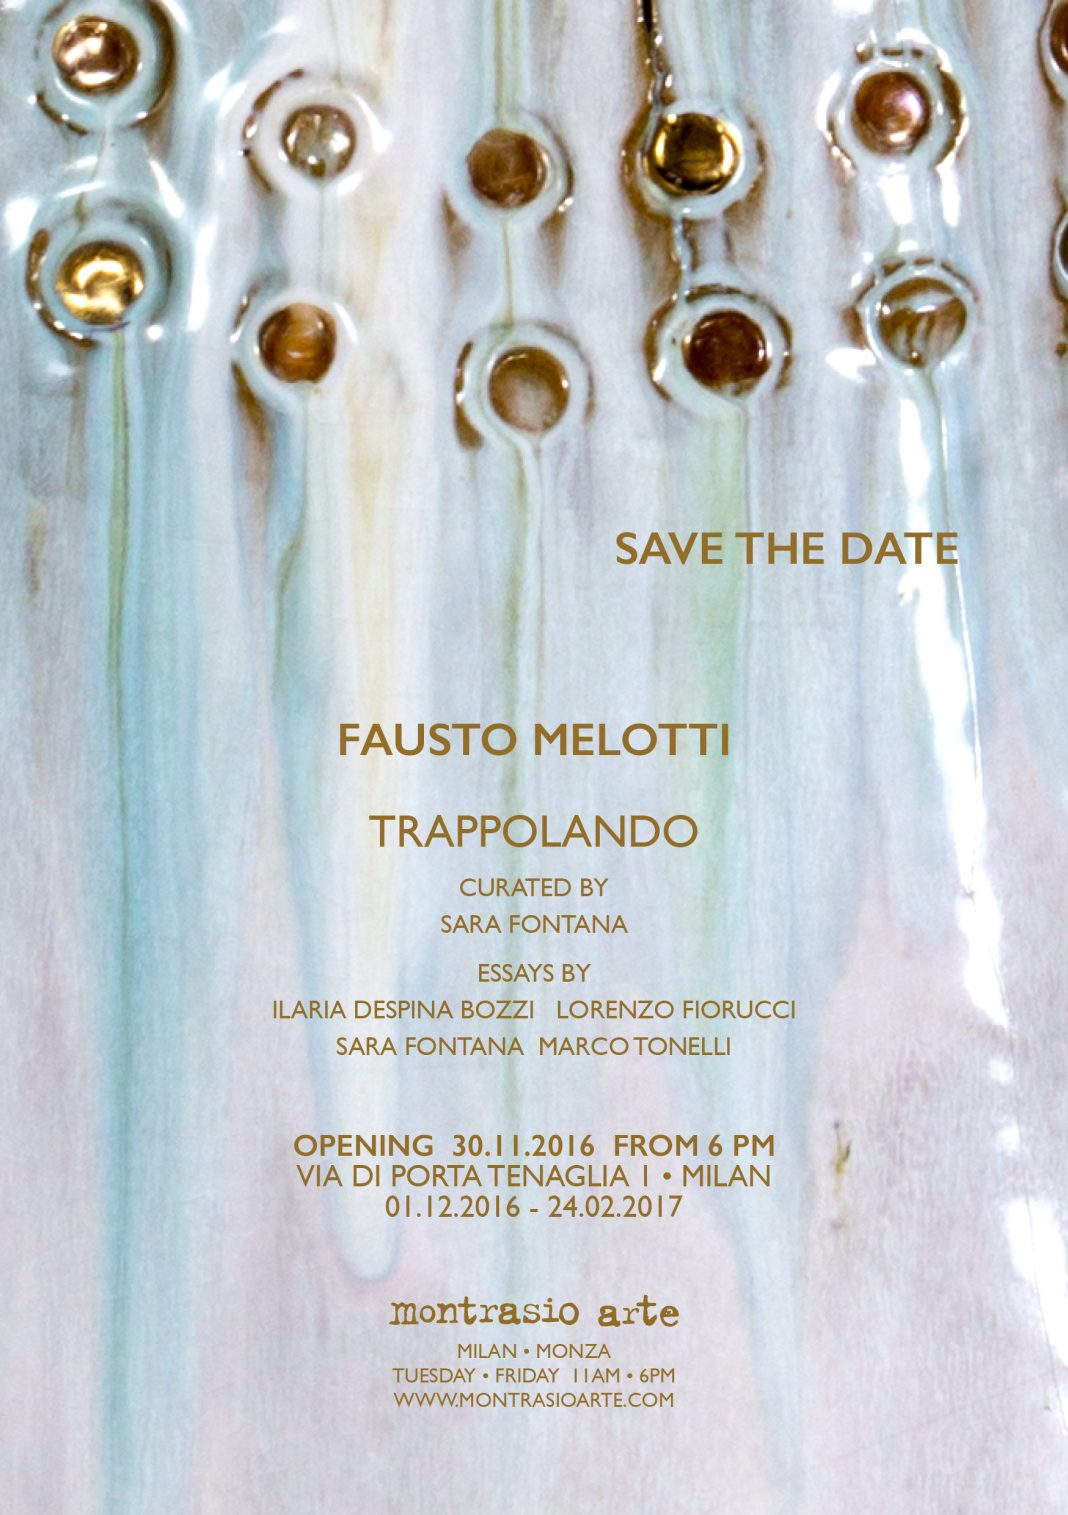 Fausto Melotti – Trappolandohttps://www.exibart.com/repository/media/eventi/2016/11/fausto-melotti-8211-trappolando-1068x1515.jpg